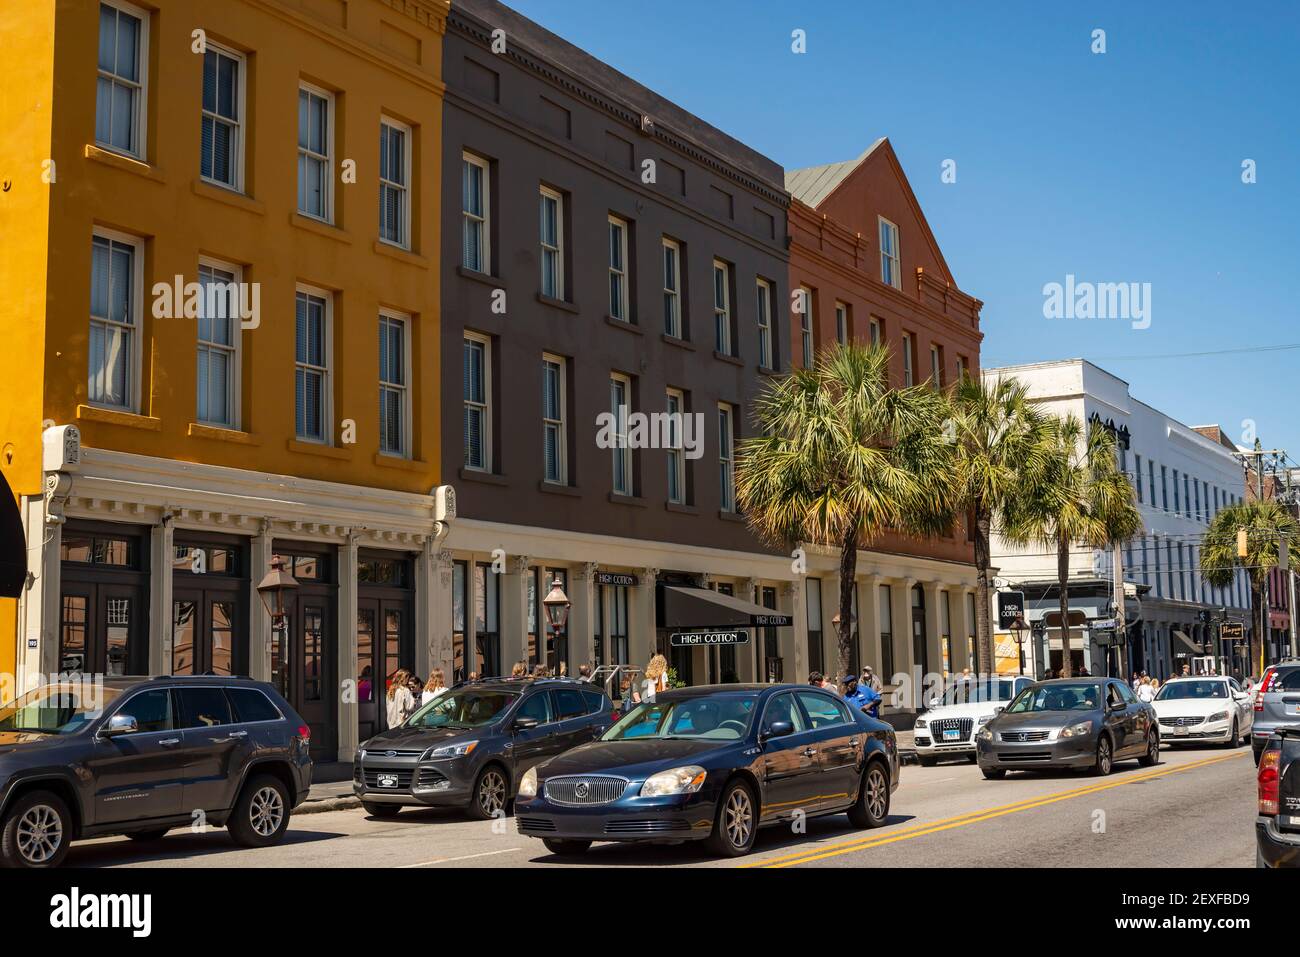 Le marché historique de Charleston City. En tant que l'un des plus anciens marchés publics du pays, les visiteurs trouvent plus de 300 entrepreneurs. Banque D'Images